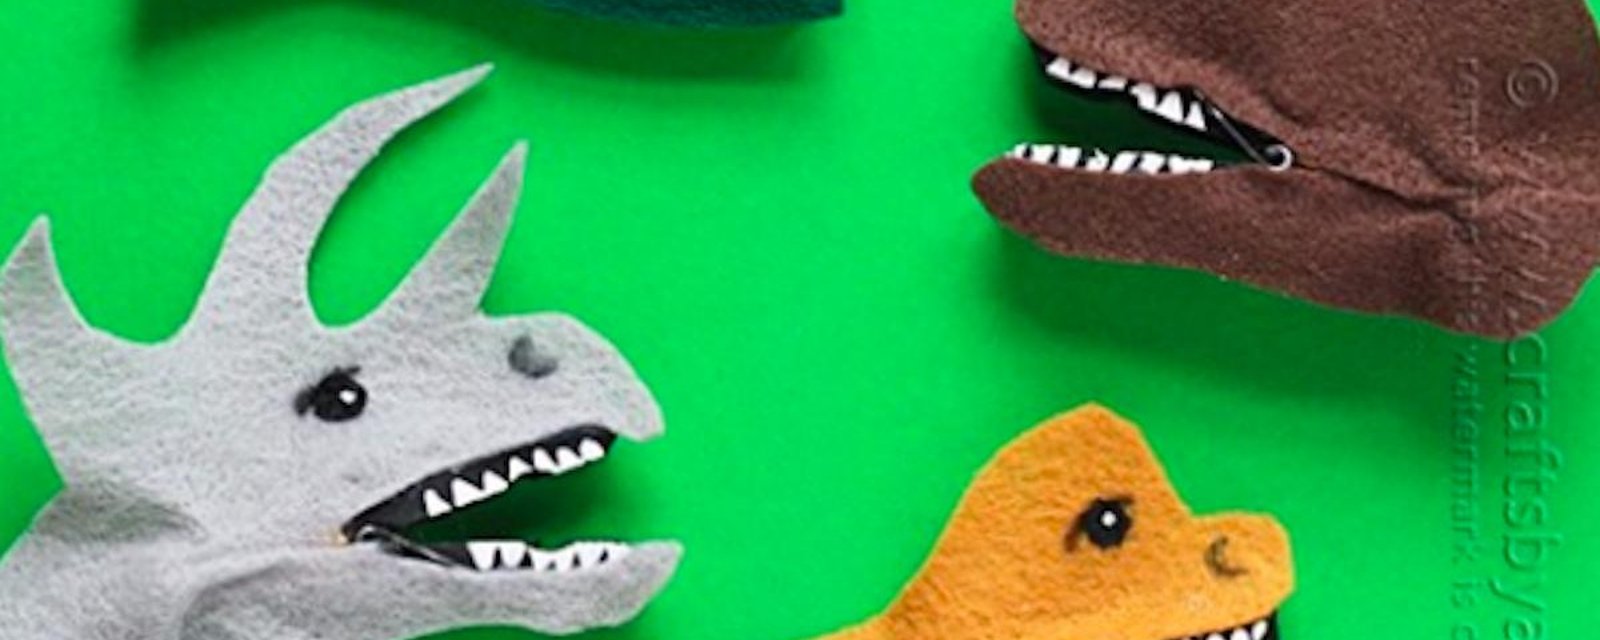 Comment fabriquer de petites marionnettes dinosaures avec des pinces à linge